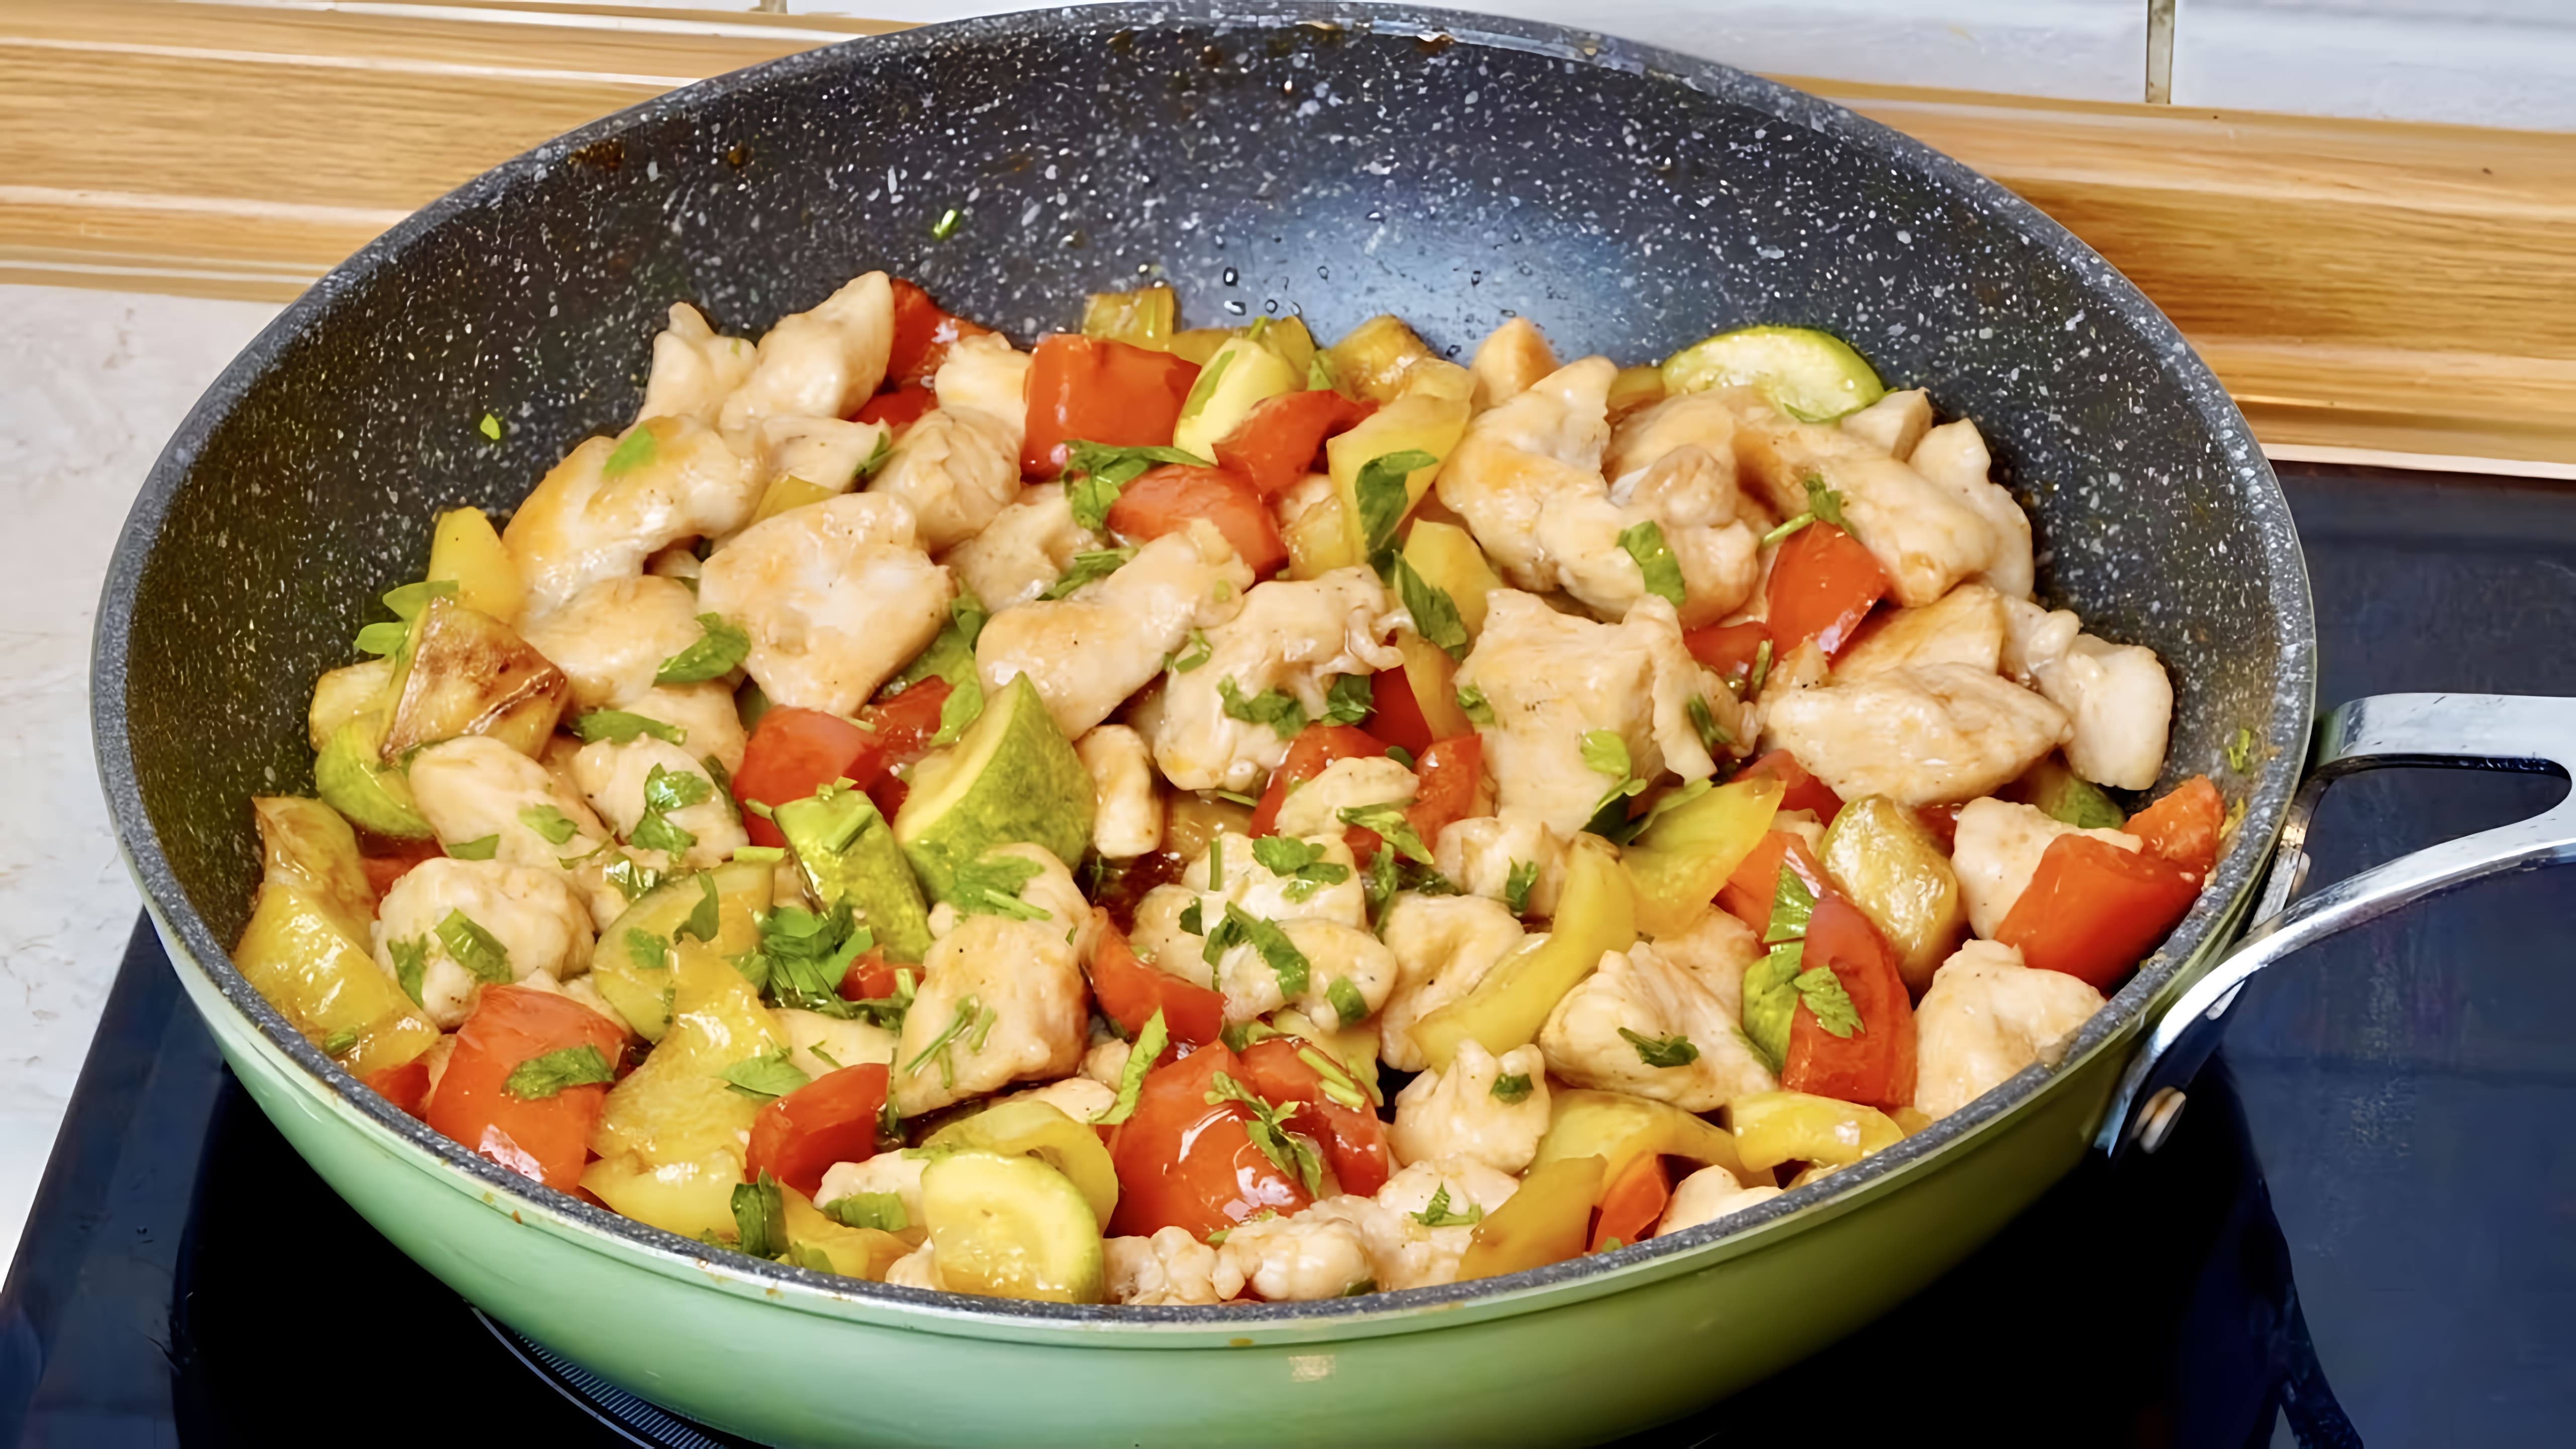 Видео: Вкусный и Быстрый рецепт Ужина на сковороде за 20 минут Кабачки, куриное филе, перец вкусно и просто